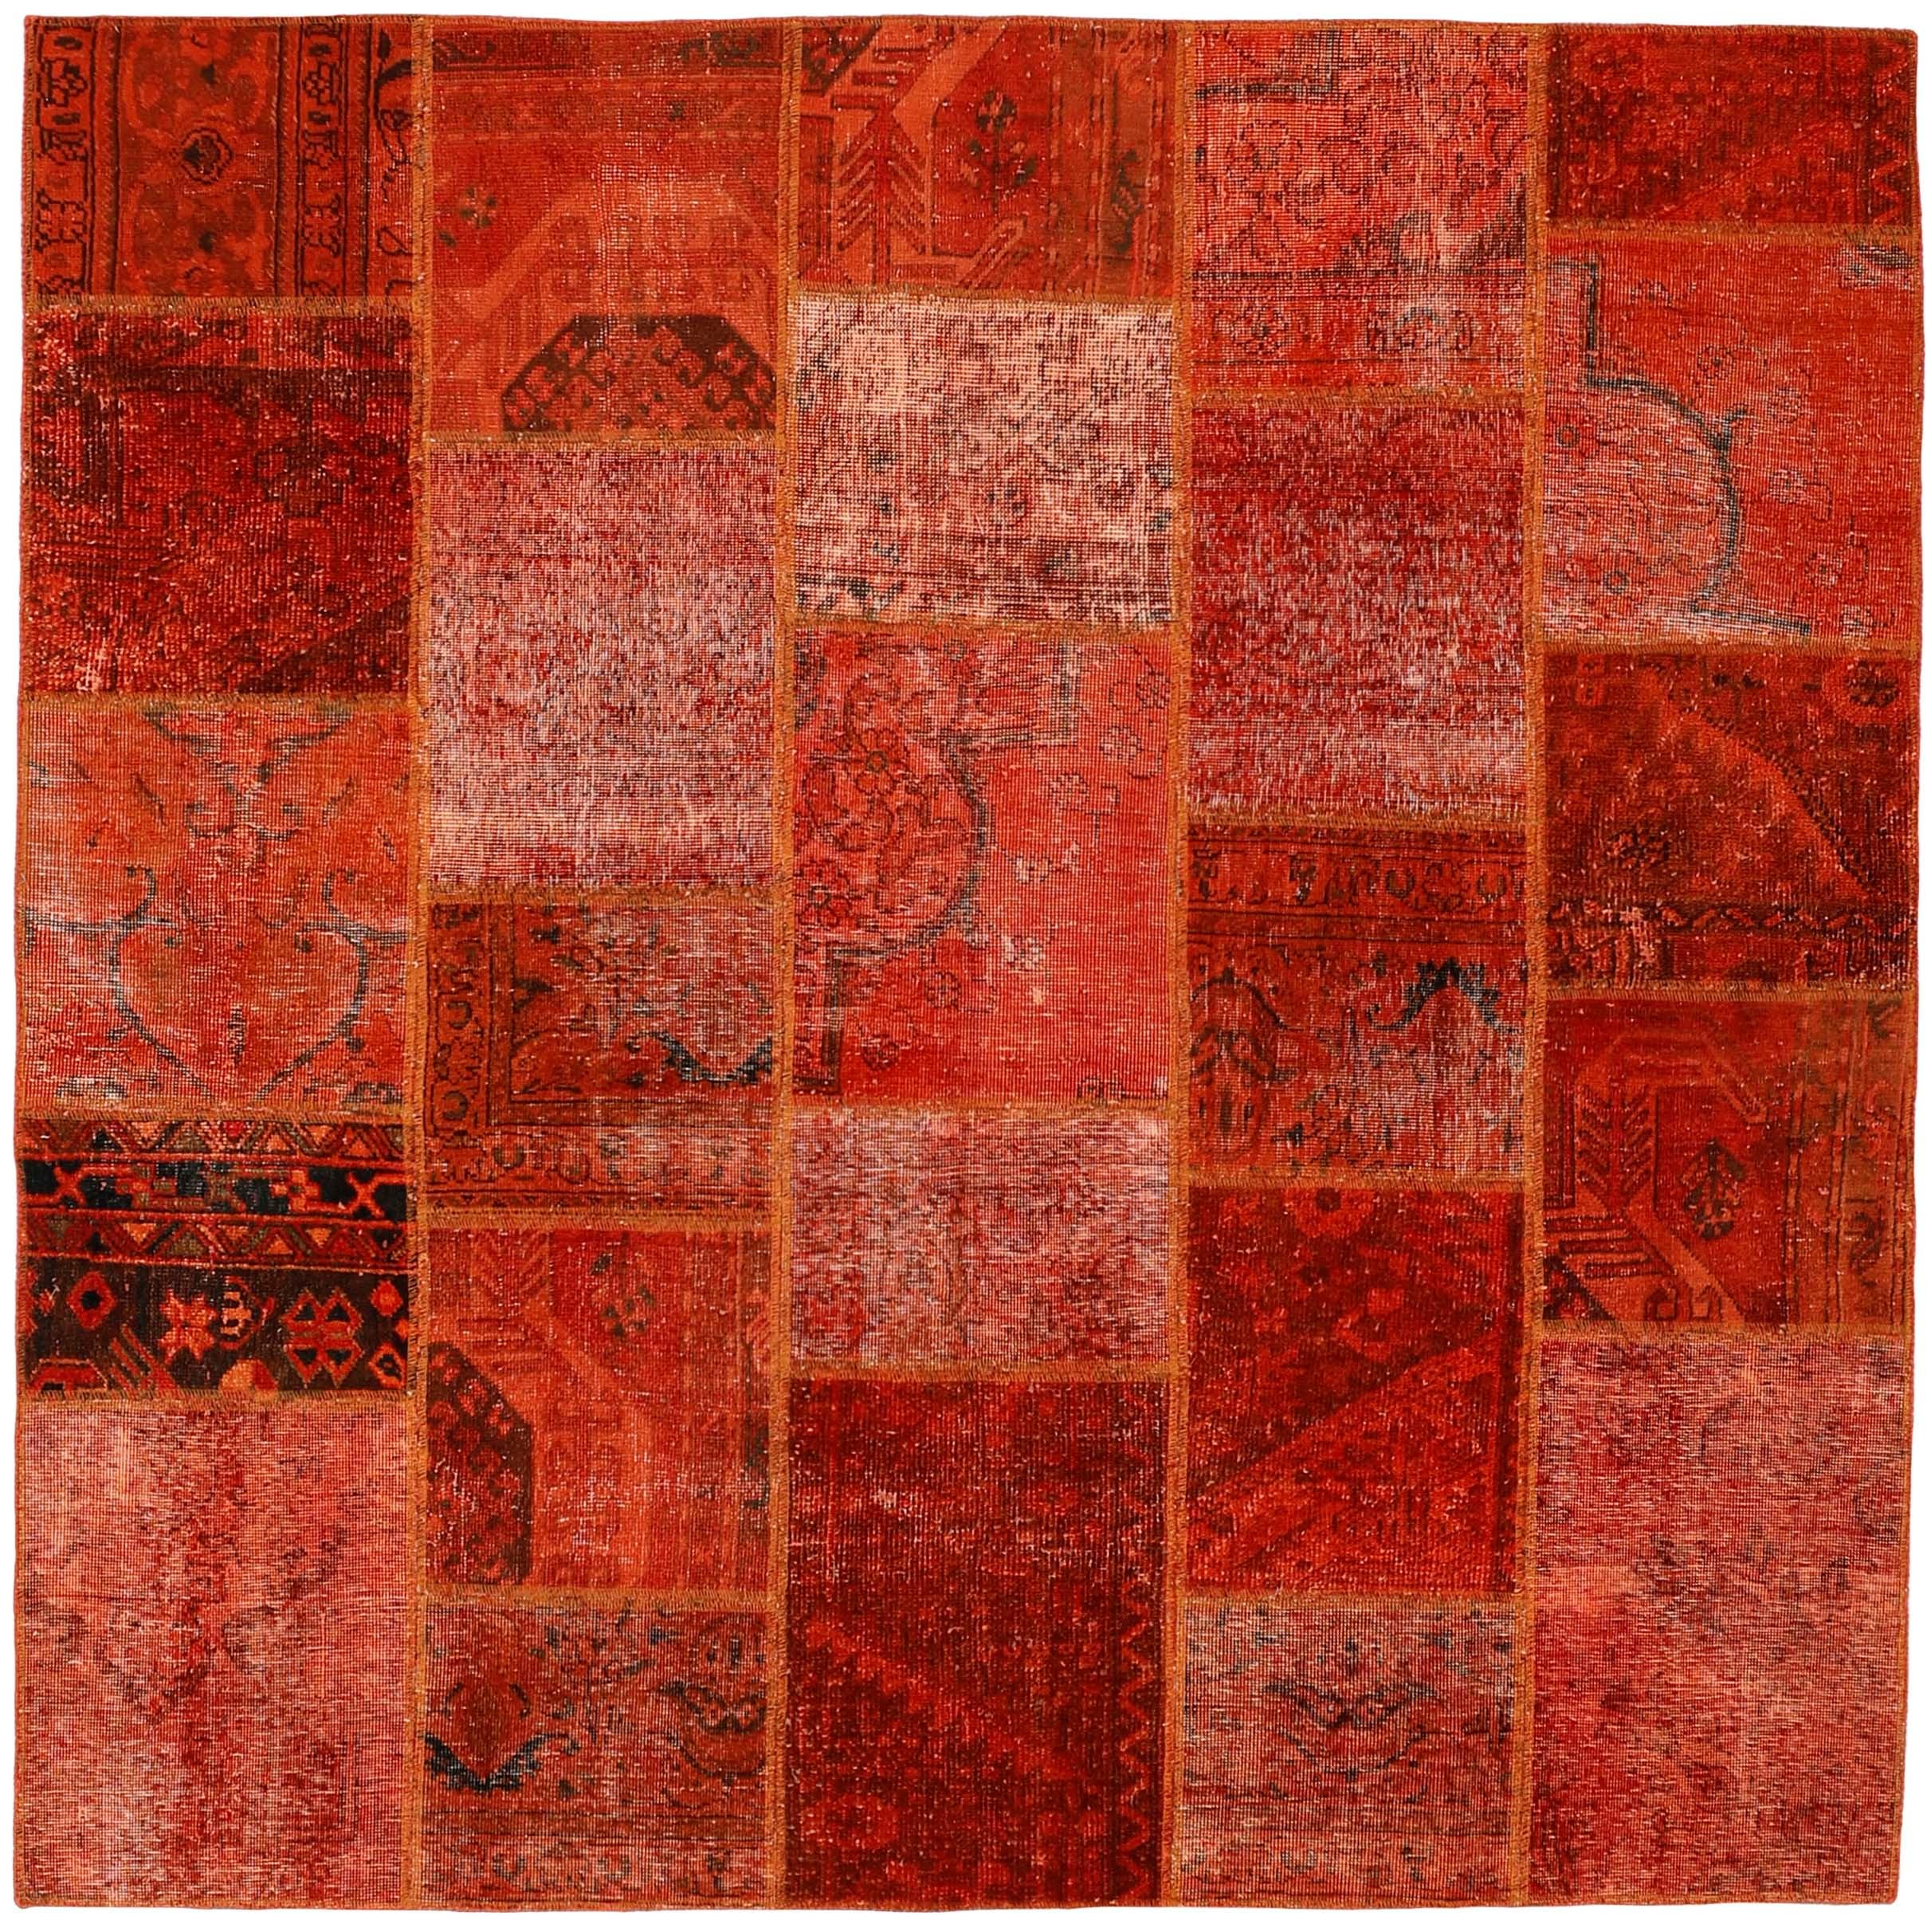 Authentic Persian orange patchwork square rug